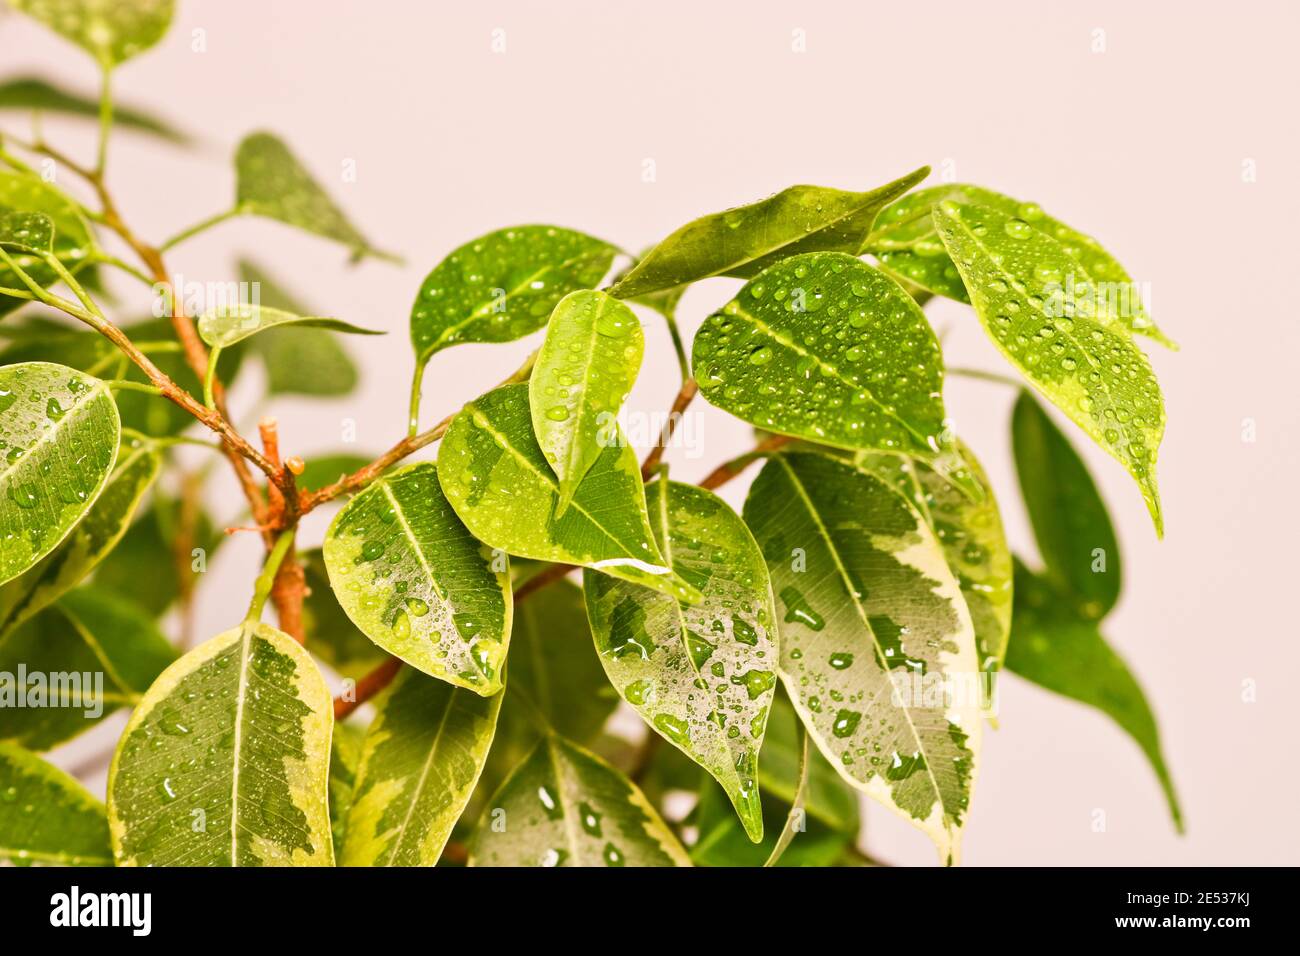 Ficus benjamin Pflanze Blätter in Tropfen Wasser nach dem Sprühen, in einem  Topf auf einem hellen Hintergrund Nahaufnahme. Weicher, selektiver Fokus.  Innenanlage für Innenräume f Stockfotografie - Alamy